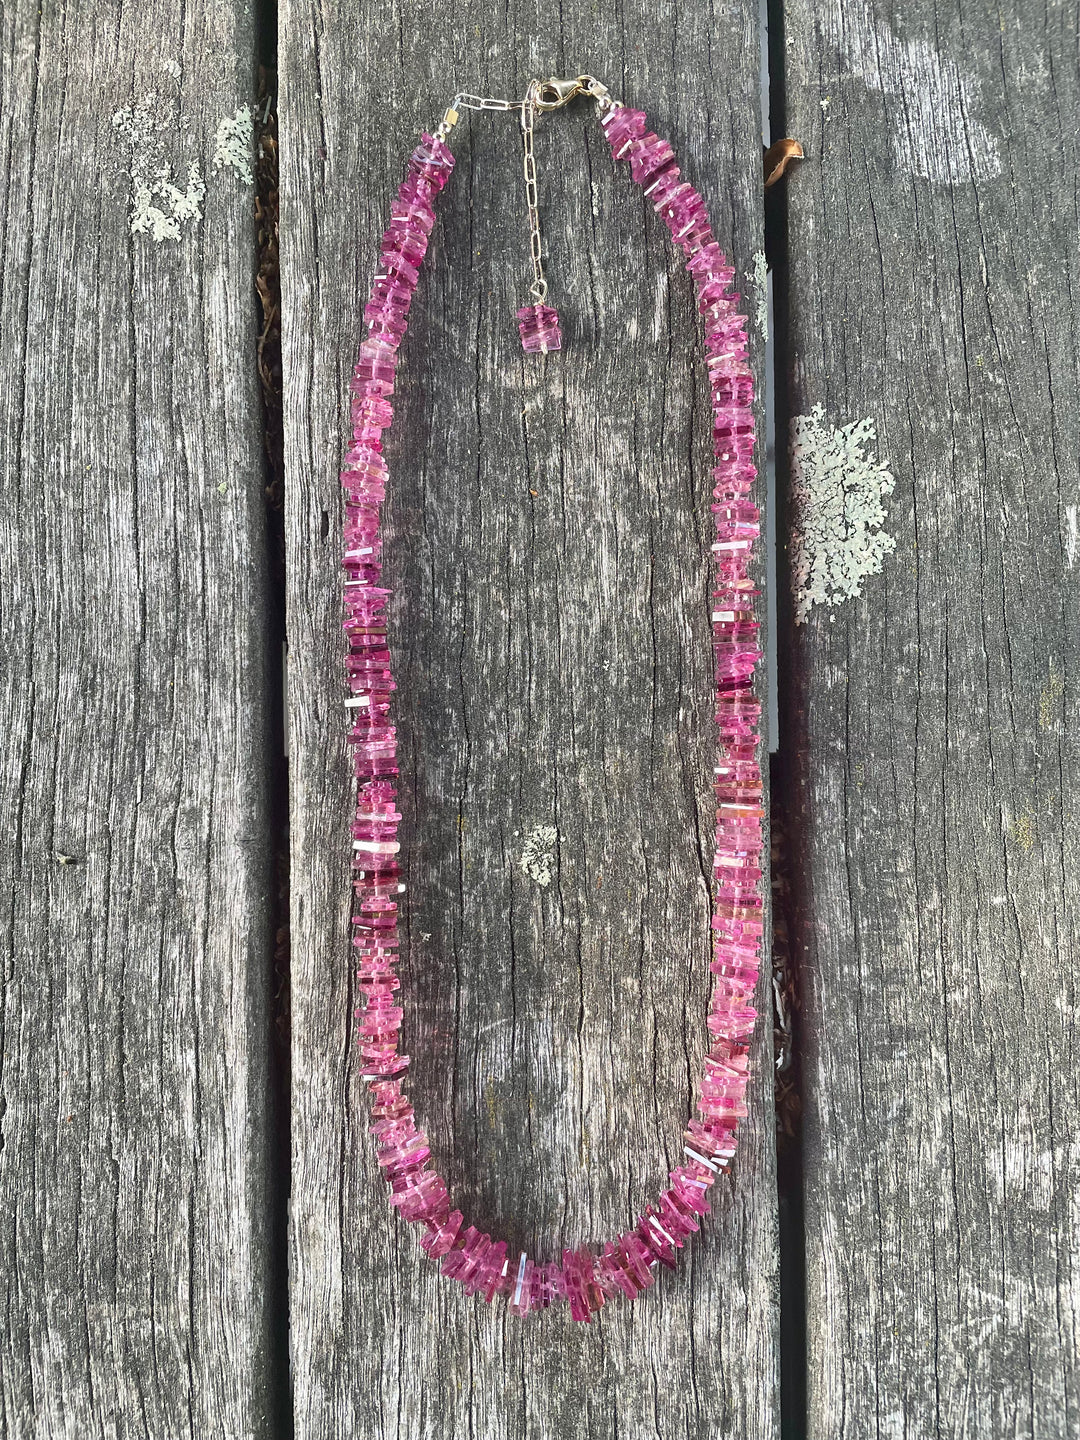 Brazilian pink Tourmaline necklace